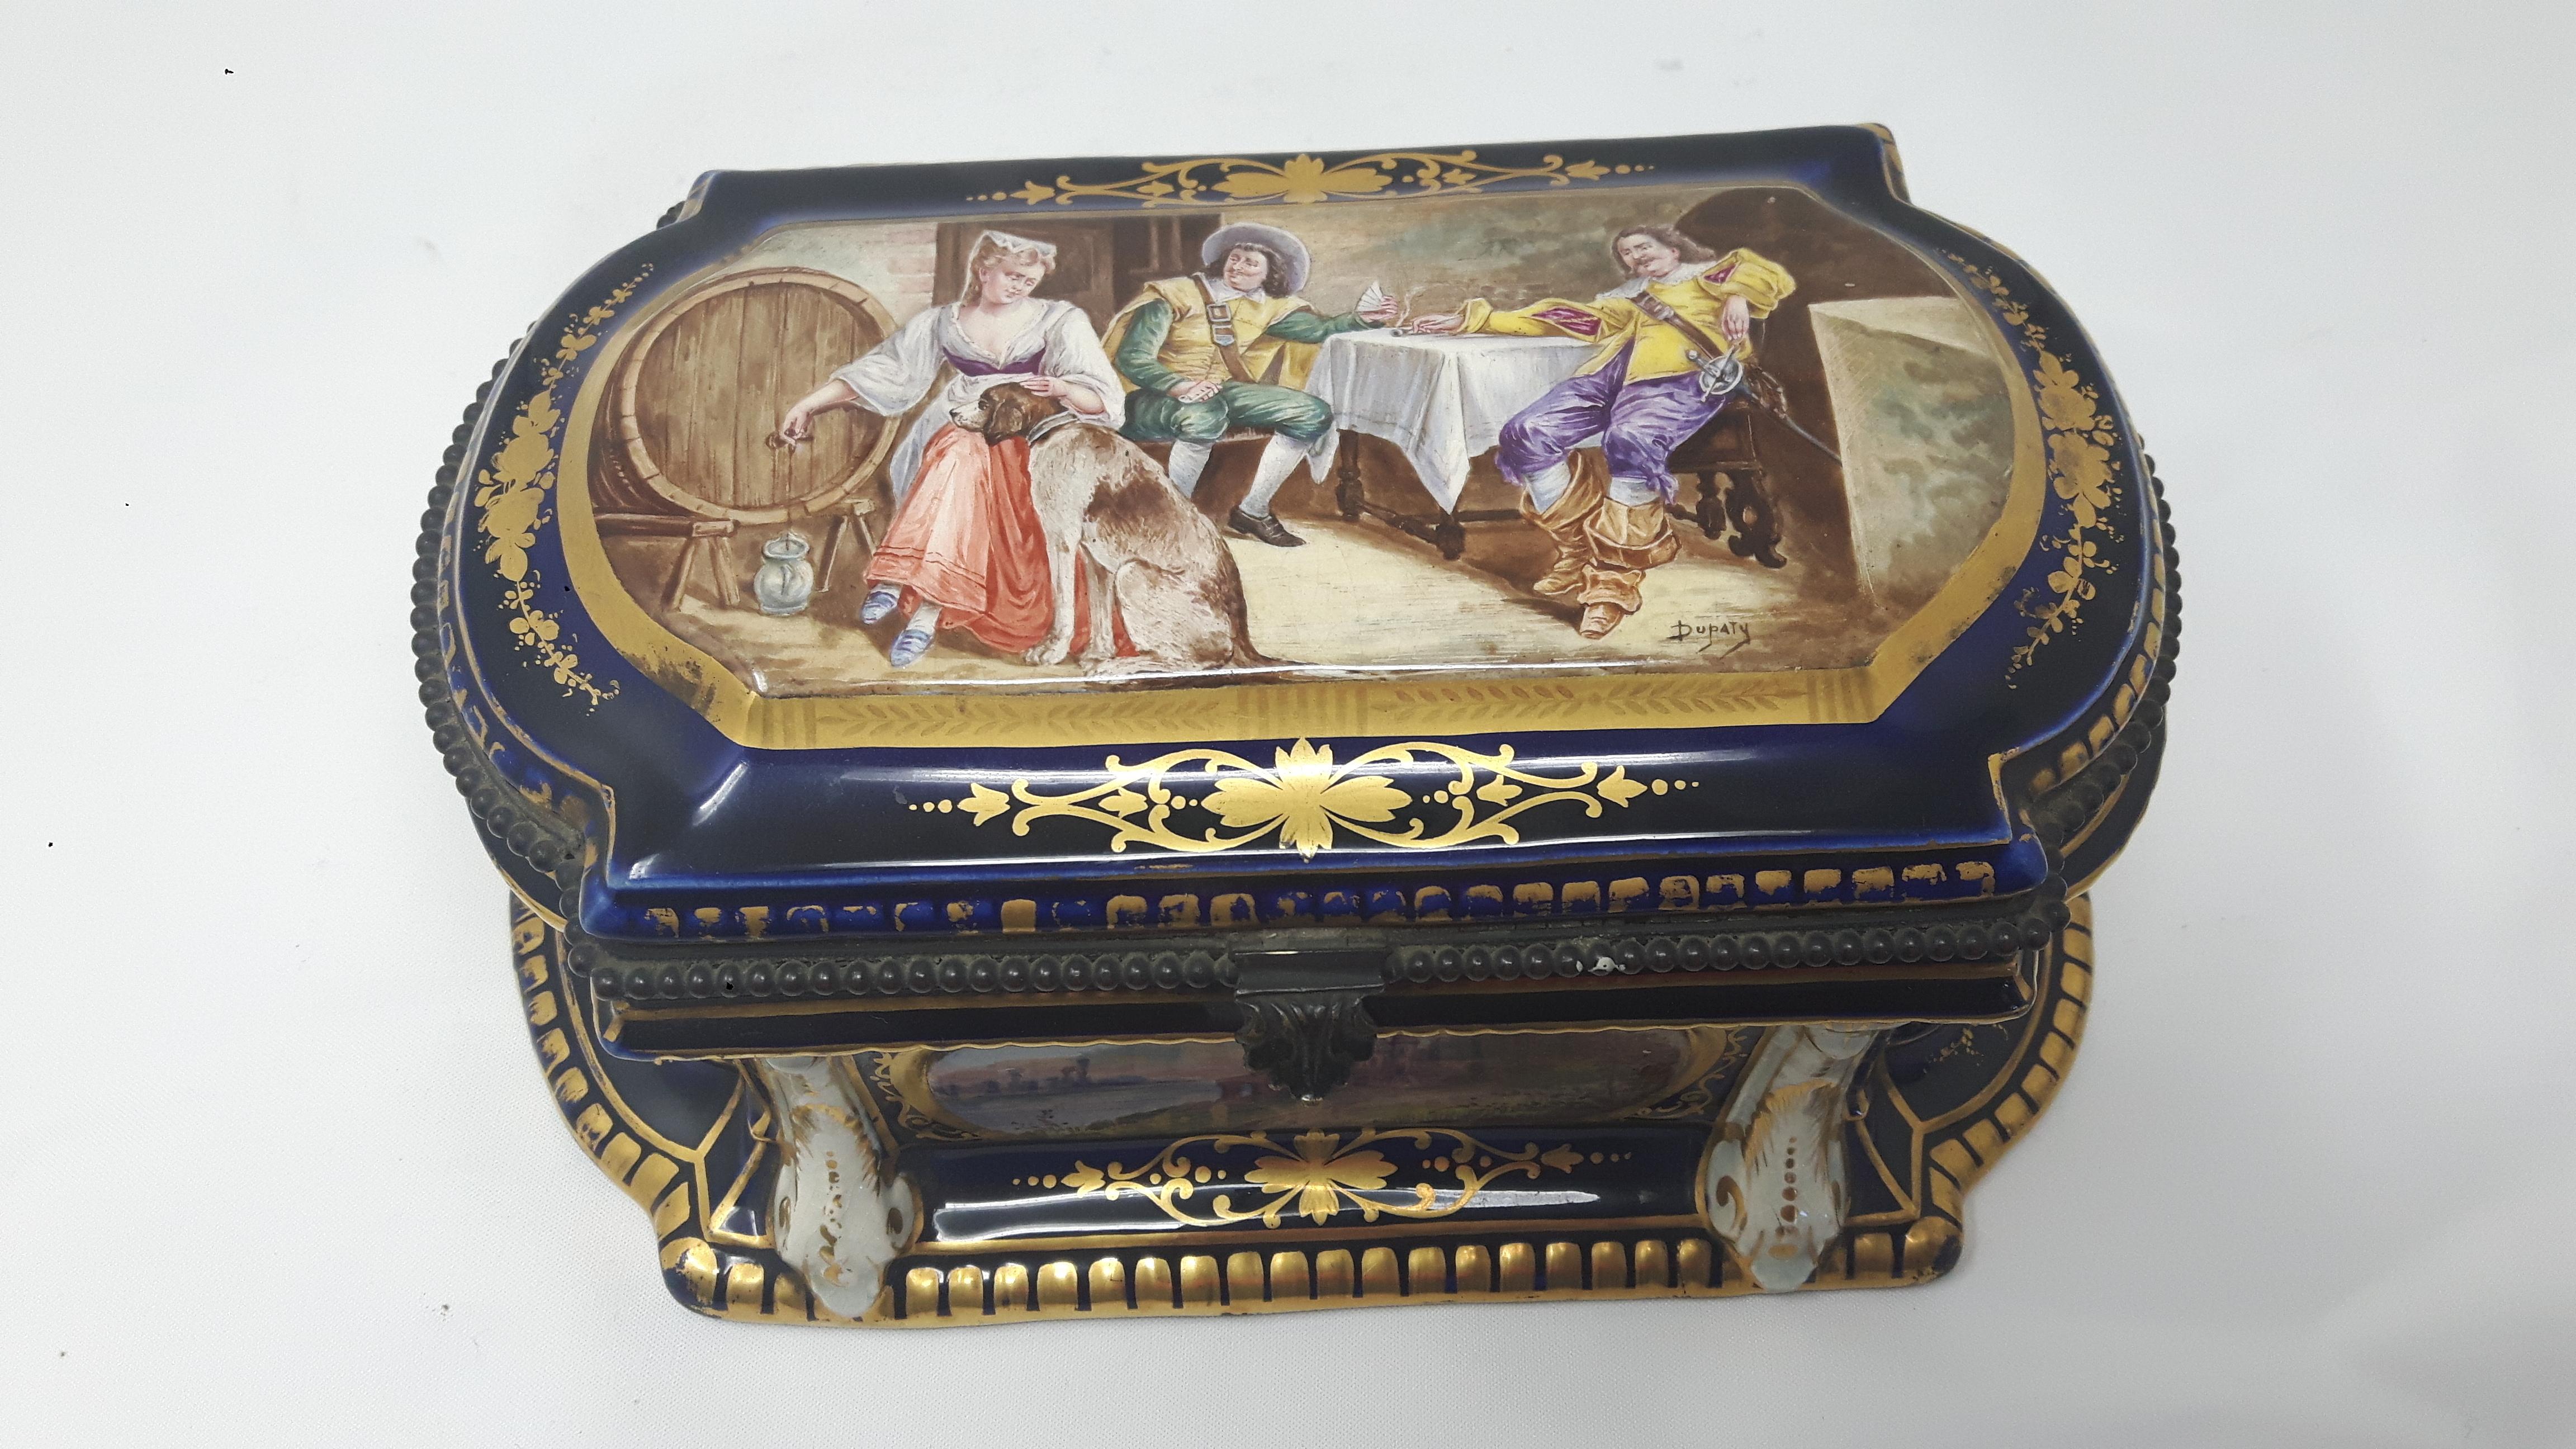 Boîte à bijoux en porcelaine de Paris peinte à la main dans le style de Sèvres avec des cartouches représentant une scène de taverne médiévale et des scènes de campagne. La boîte est fortement dorée avec des guirlandes à la manière du XVIIIe